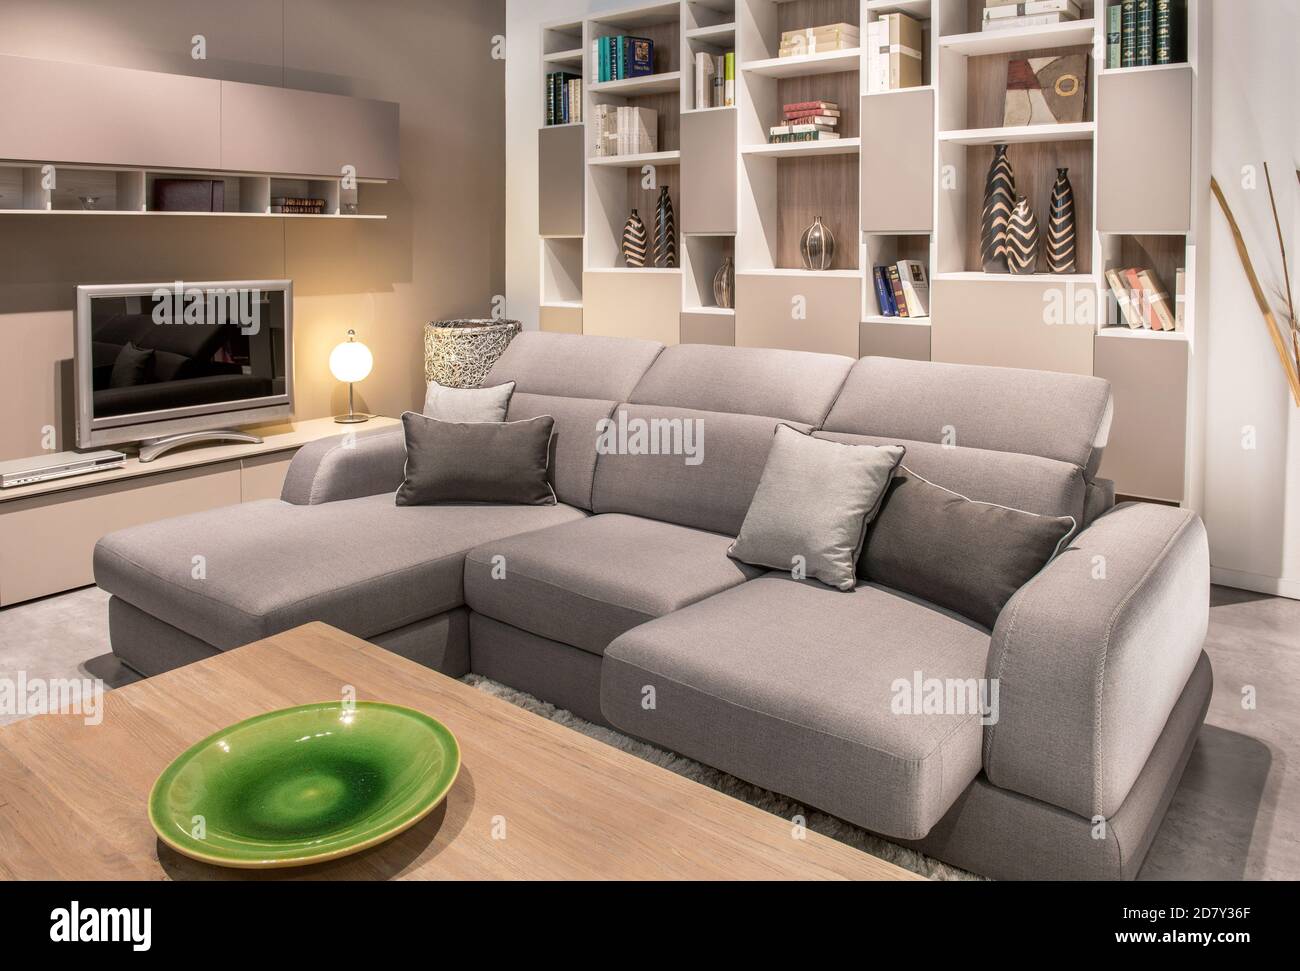 Grande e confortevole divano beige in un intimo soggiorno interno con televisore e display a parete, vista su un caffè tavolo con terracotta verde pla Foto Stock